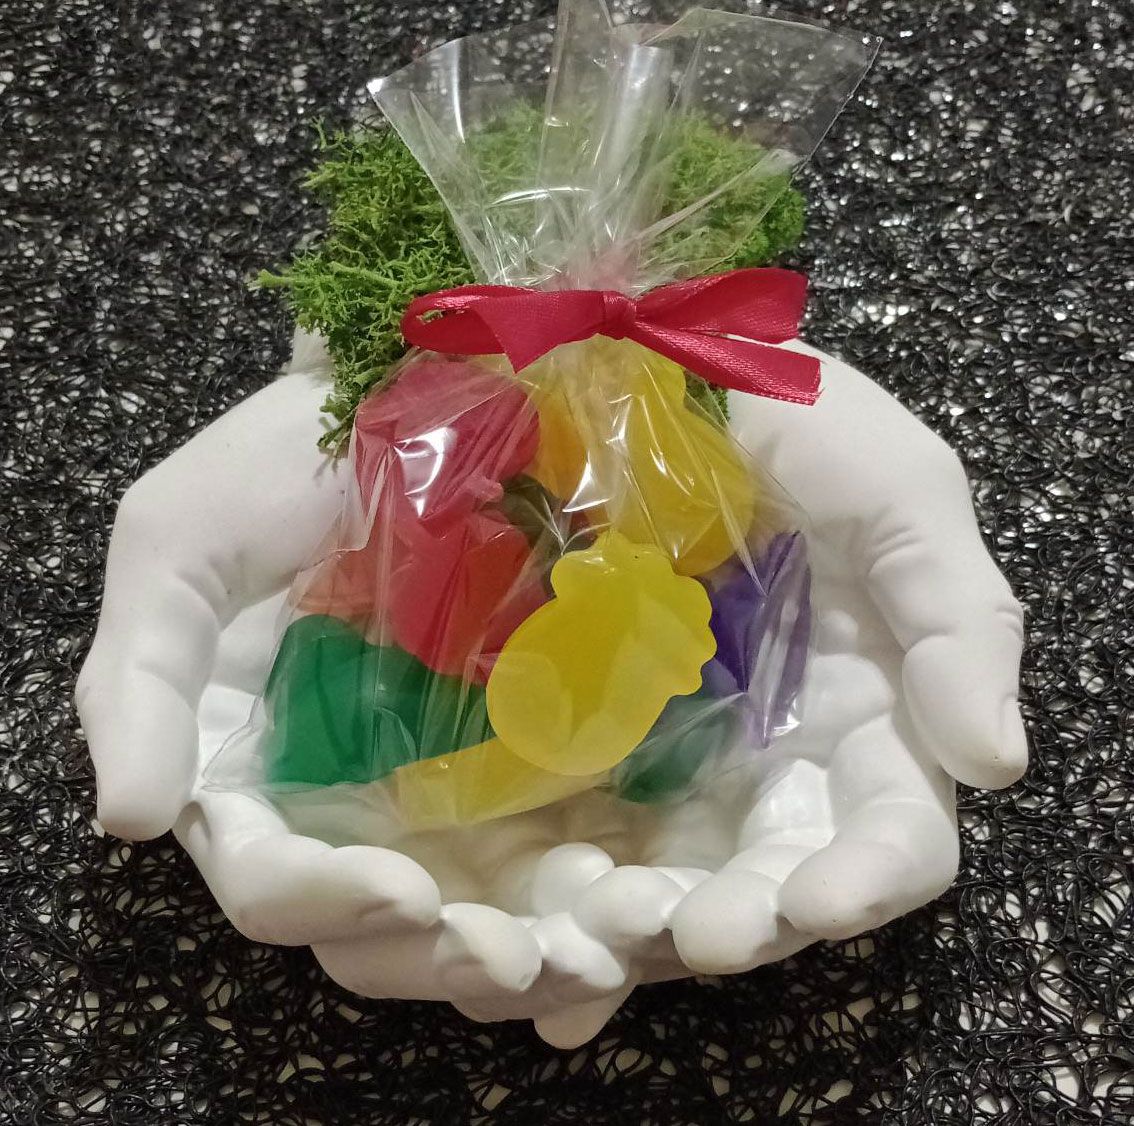 Mini mydełka kolorowe owoce 10 szt zapachy dla dzieci